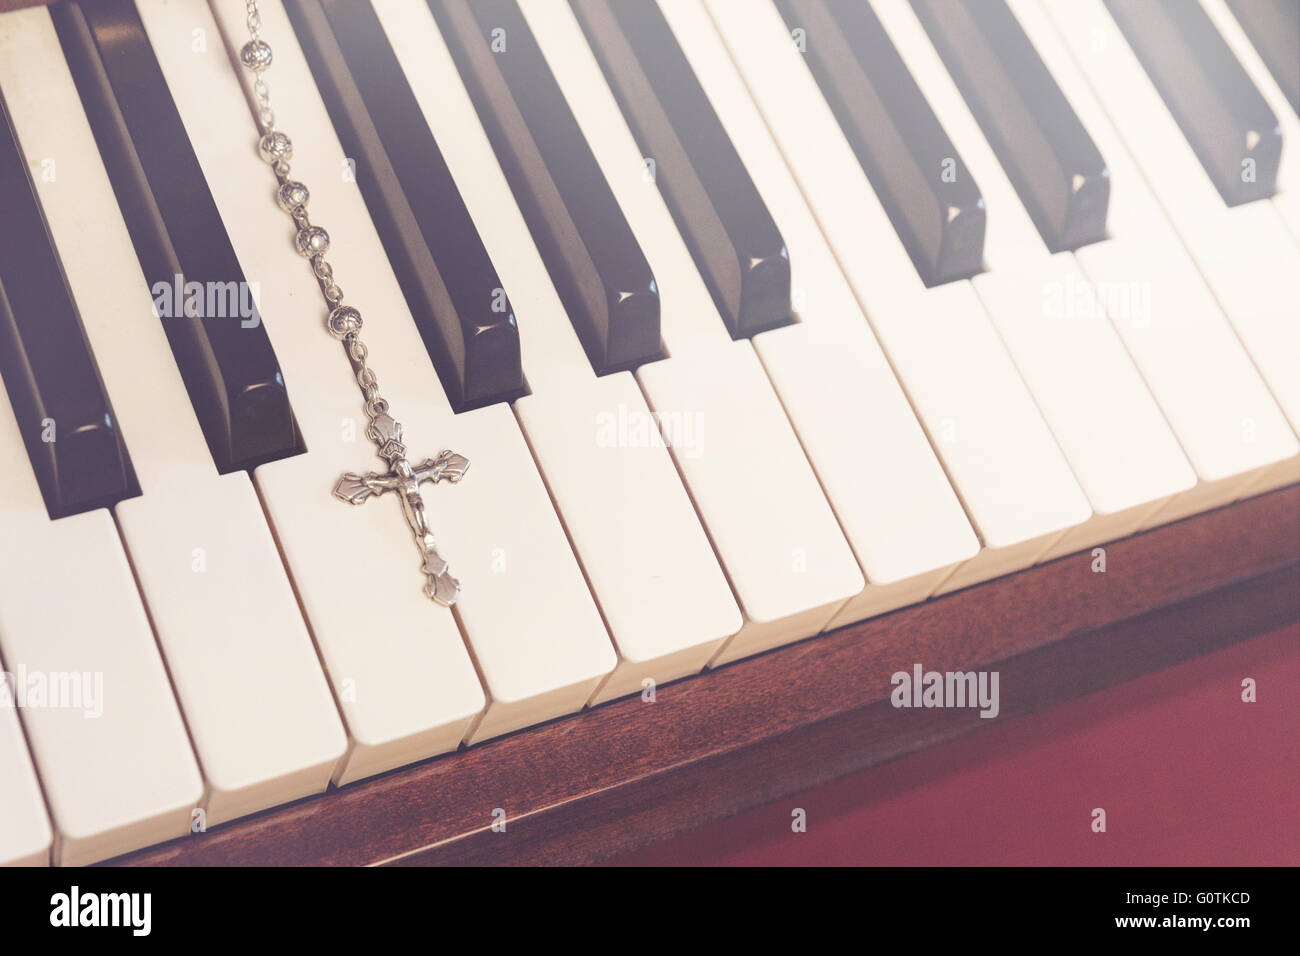 Close-up of crucifix on piano keyboard Stock Photo